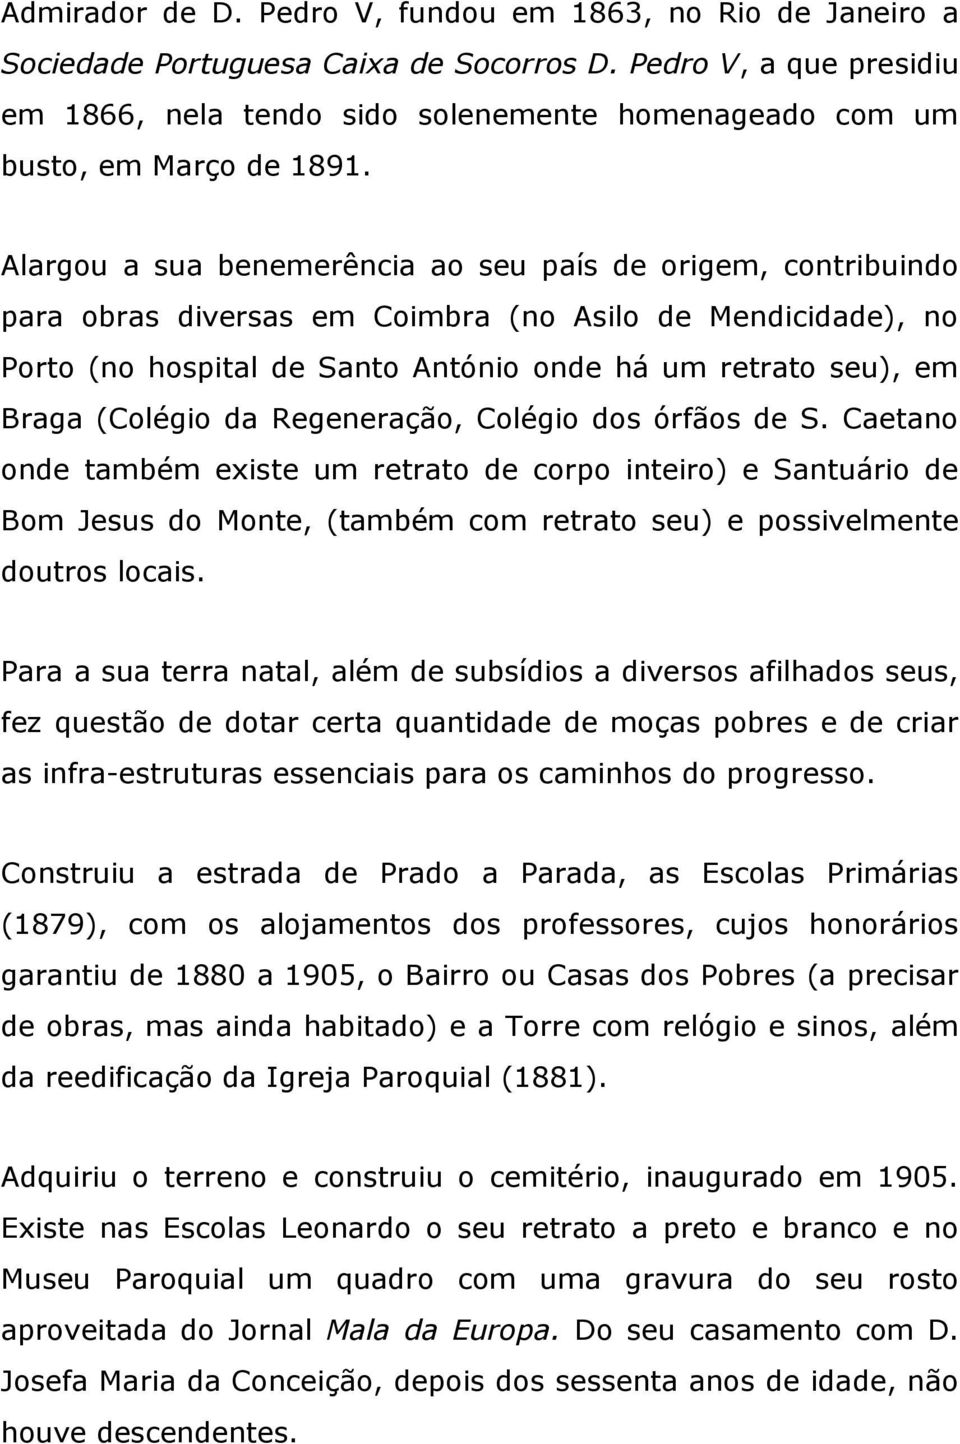 Alargou a sua benemerência ao seu país de origem, contribuindo para obras diversas em Coimbra (no Asilo de Mendicidade), no Porto (no hospital de Santo António onde há um retrato seu), em Braga